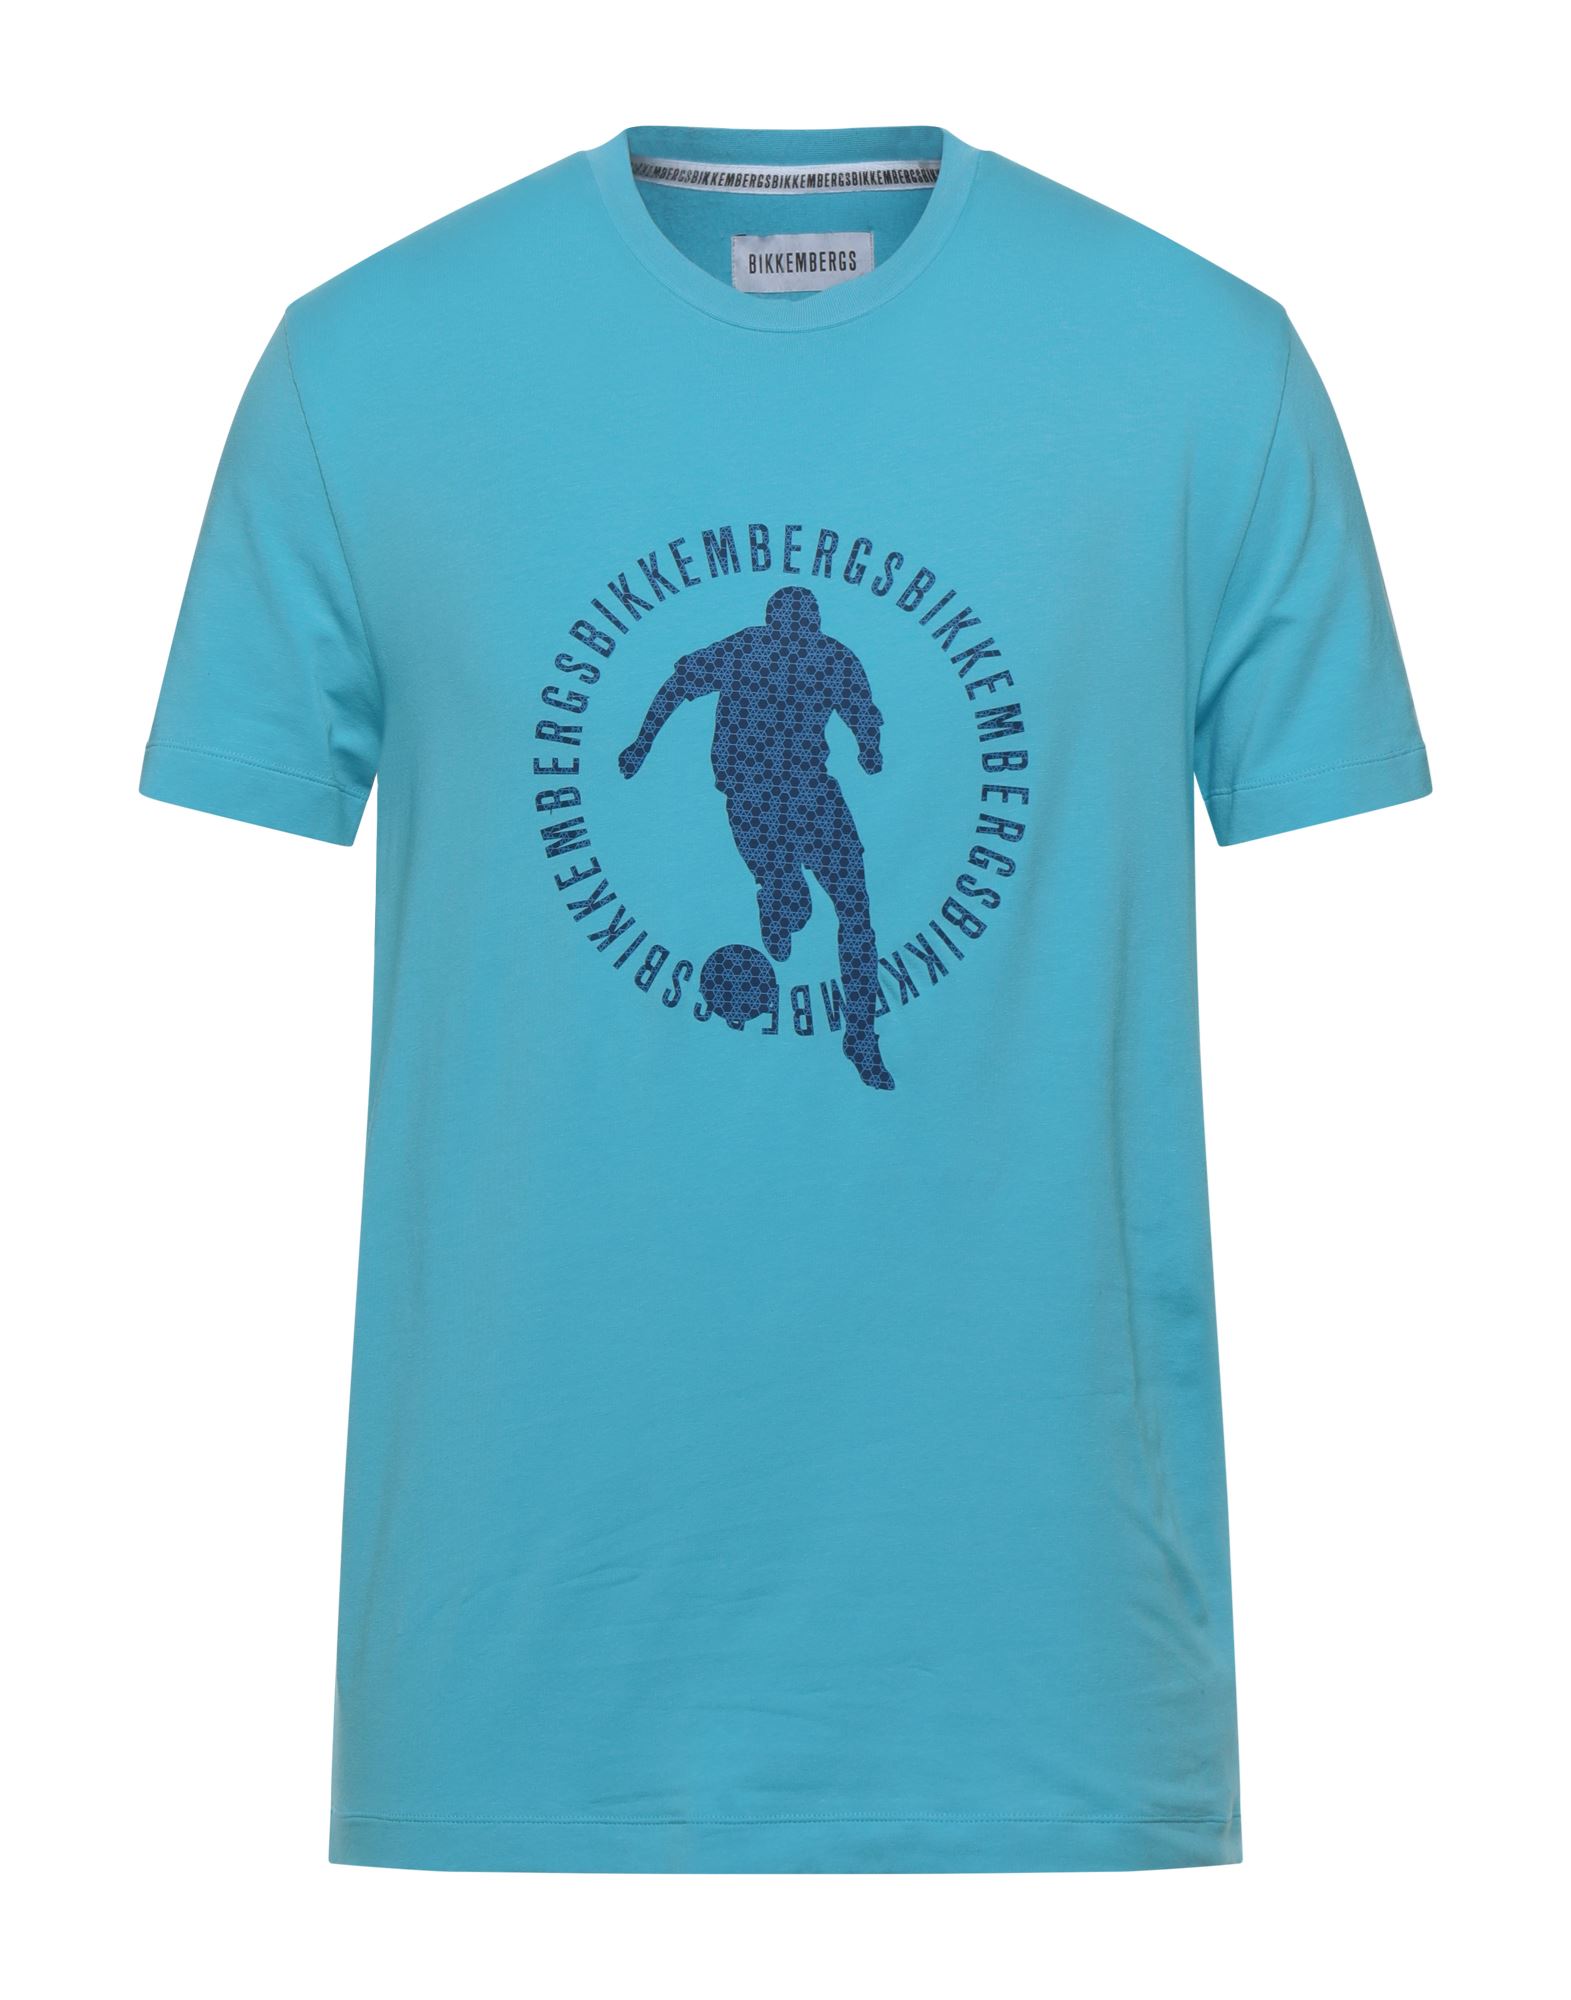 BIKKEMBERGS T-shirts Herren Azurblau von BIKKEMBERGS